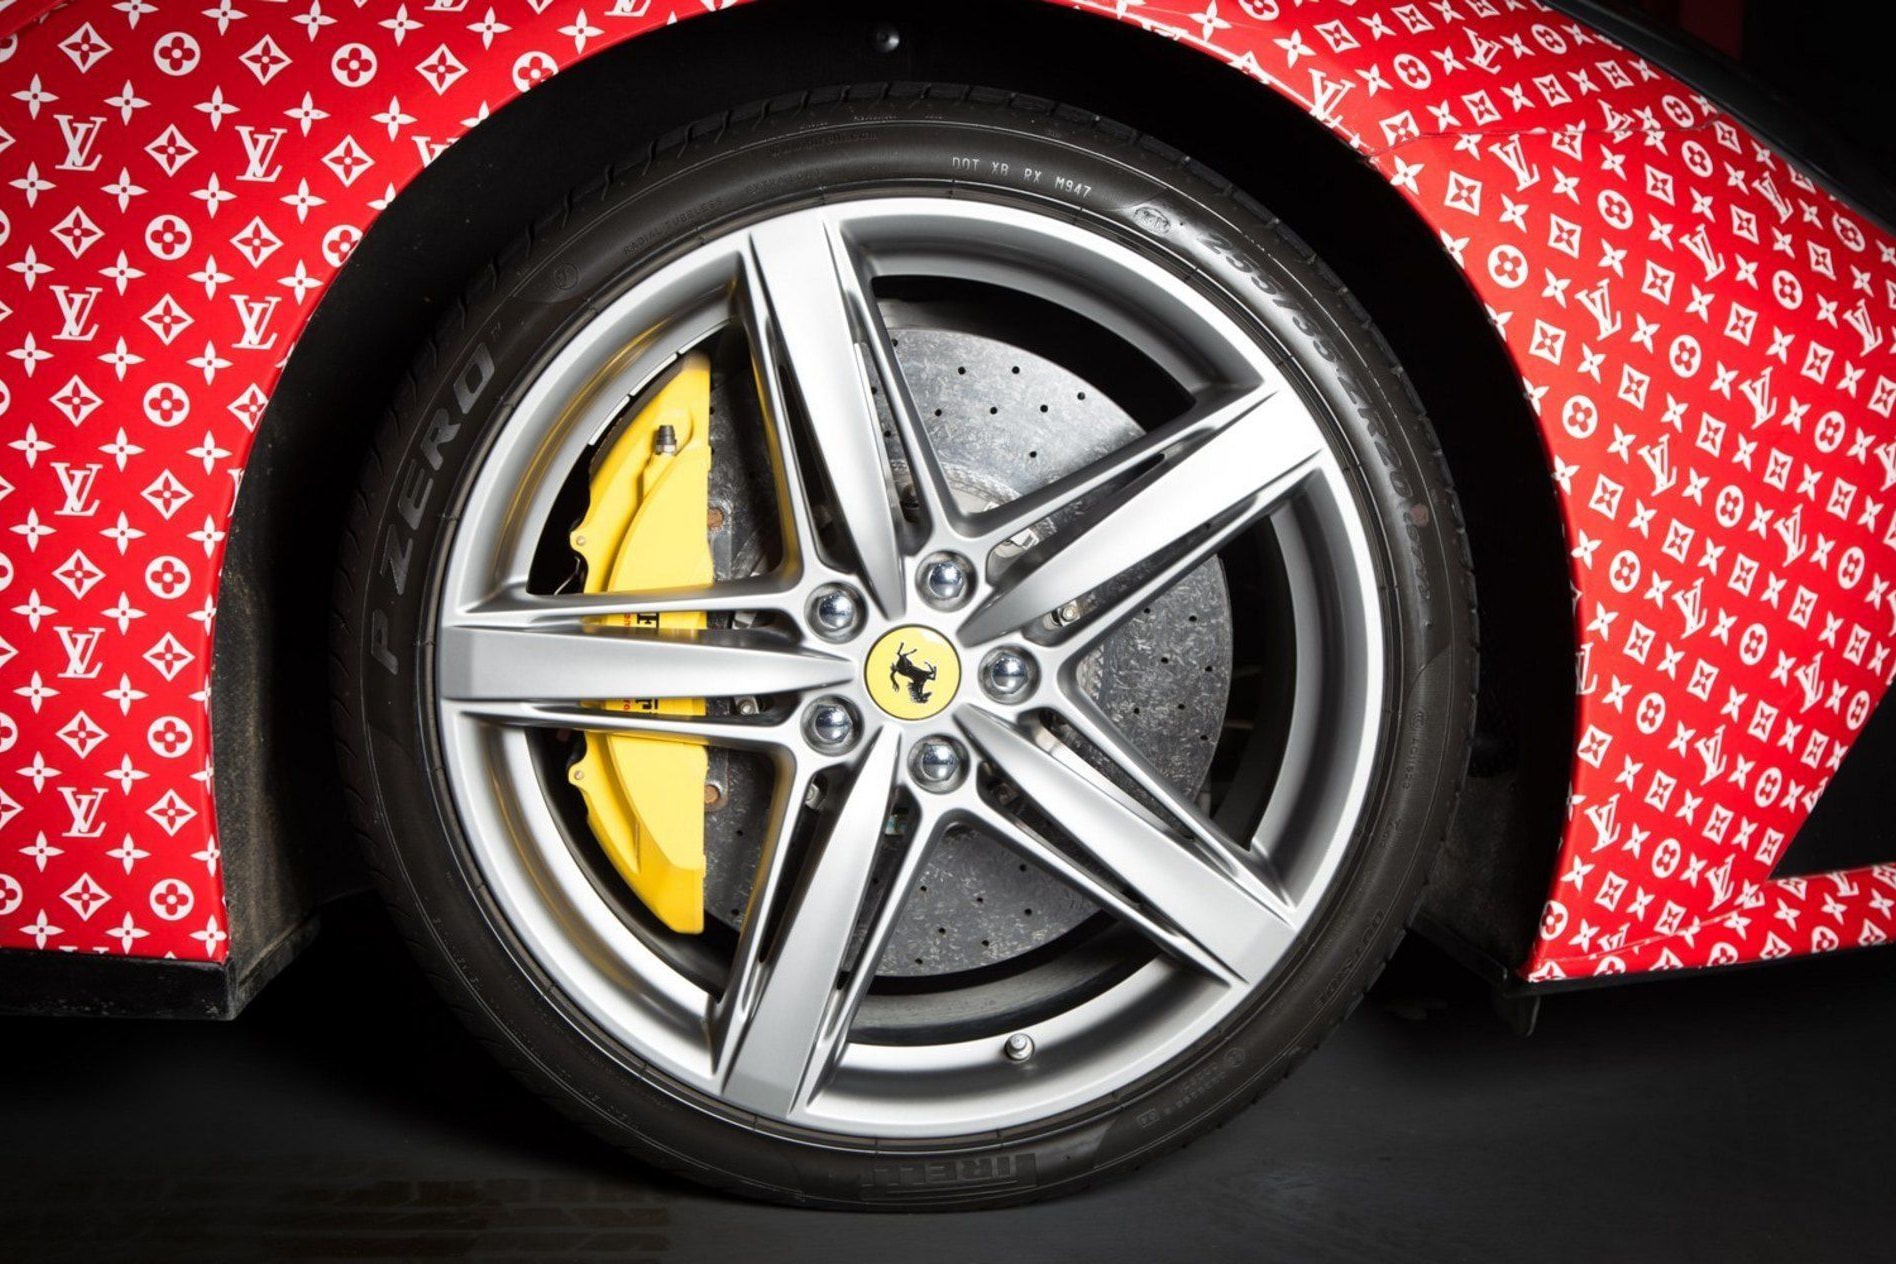 Supreme x Louis Vuitton Ferrari F12 For Sale